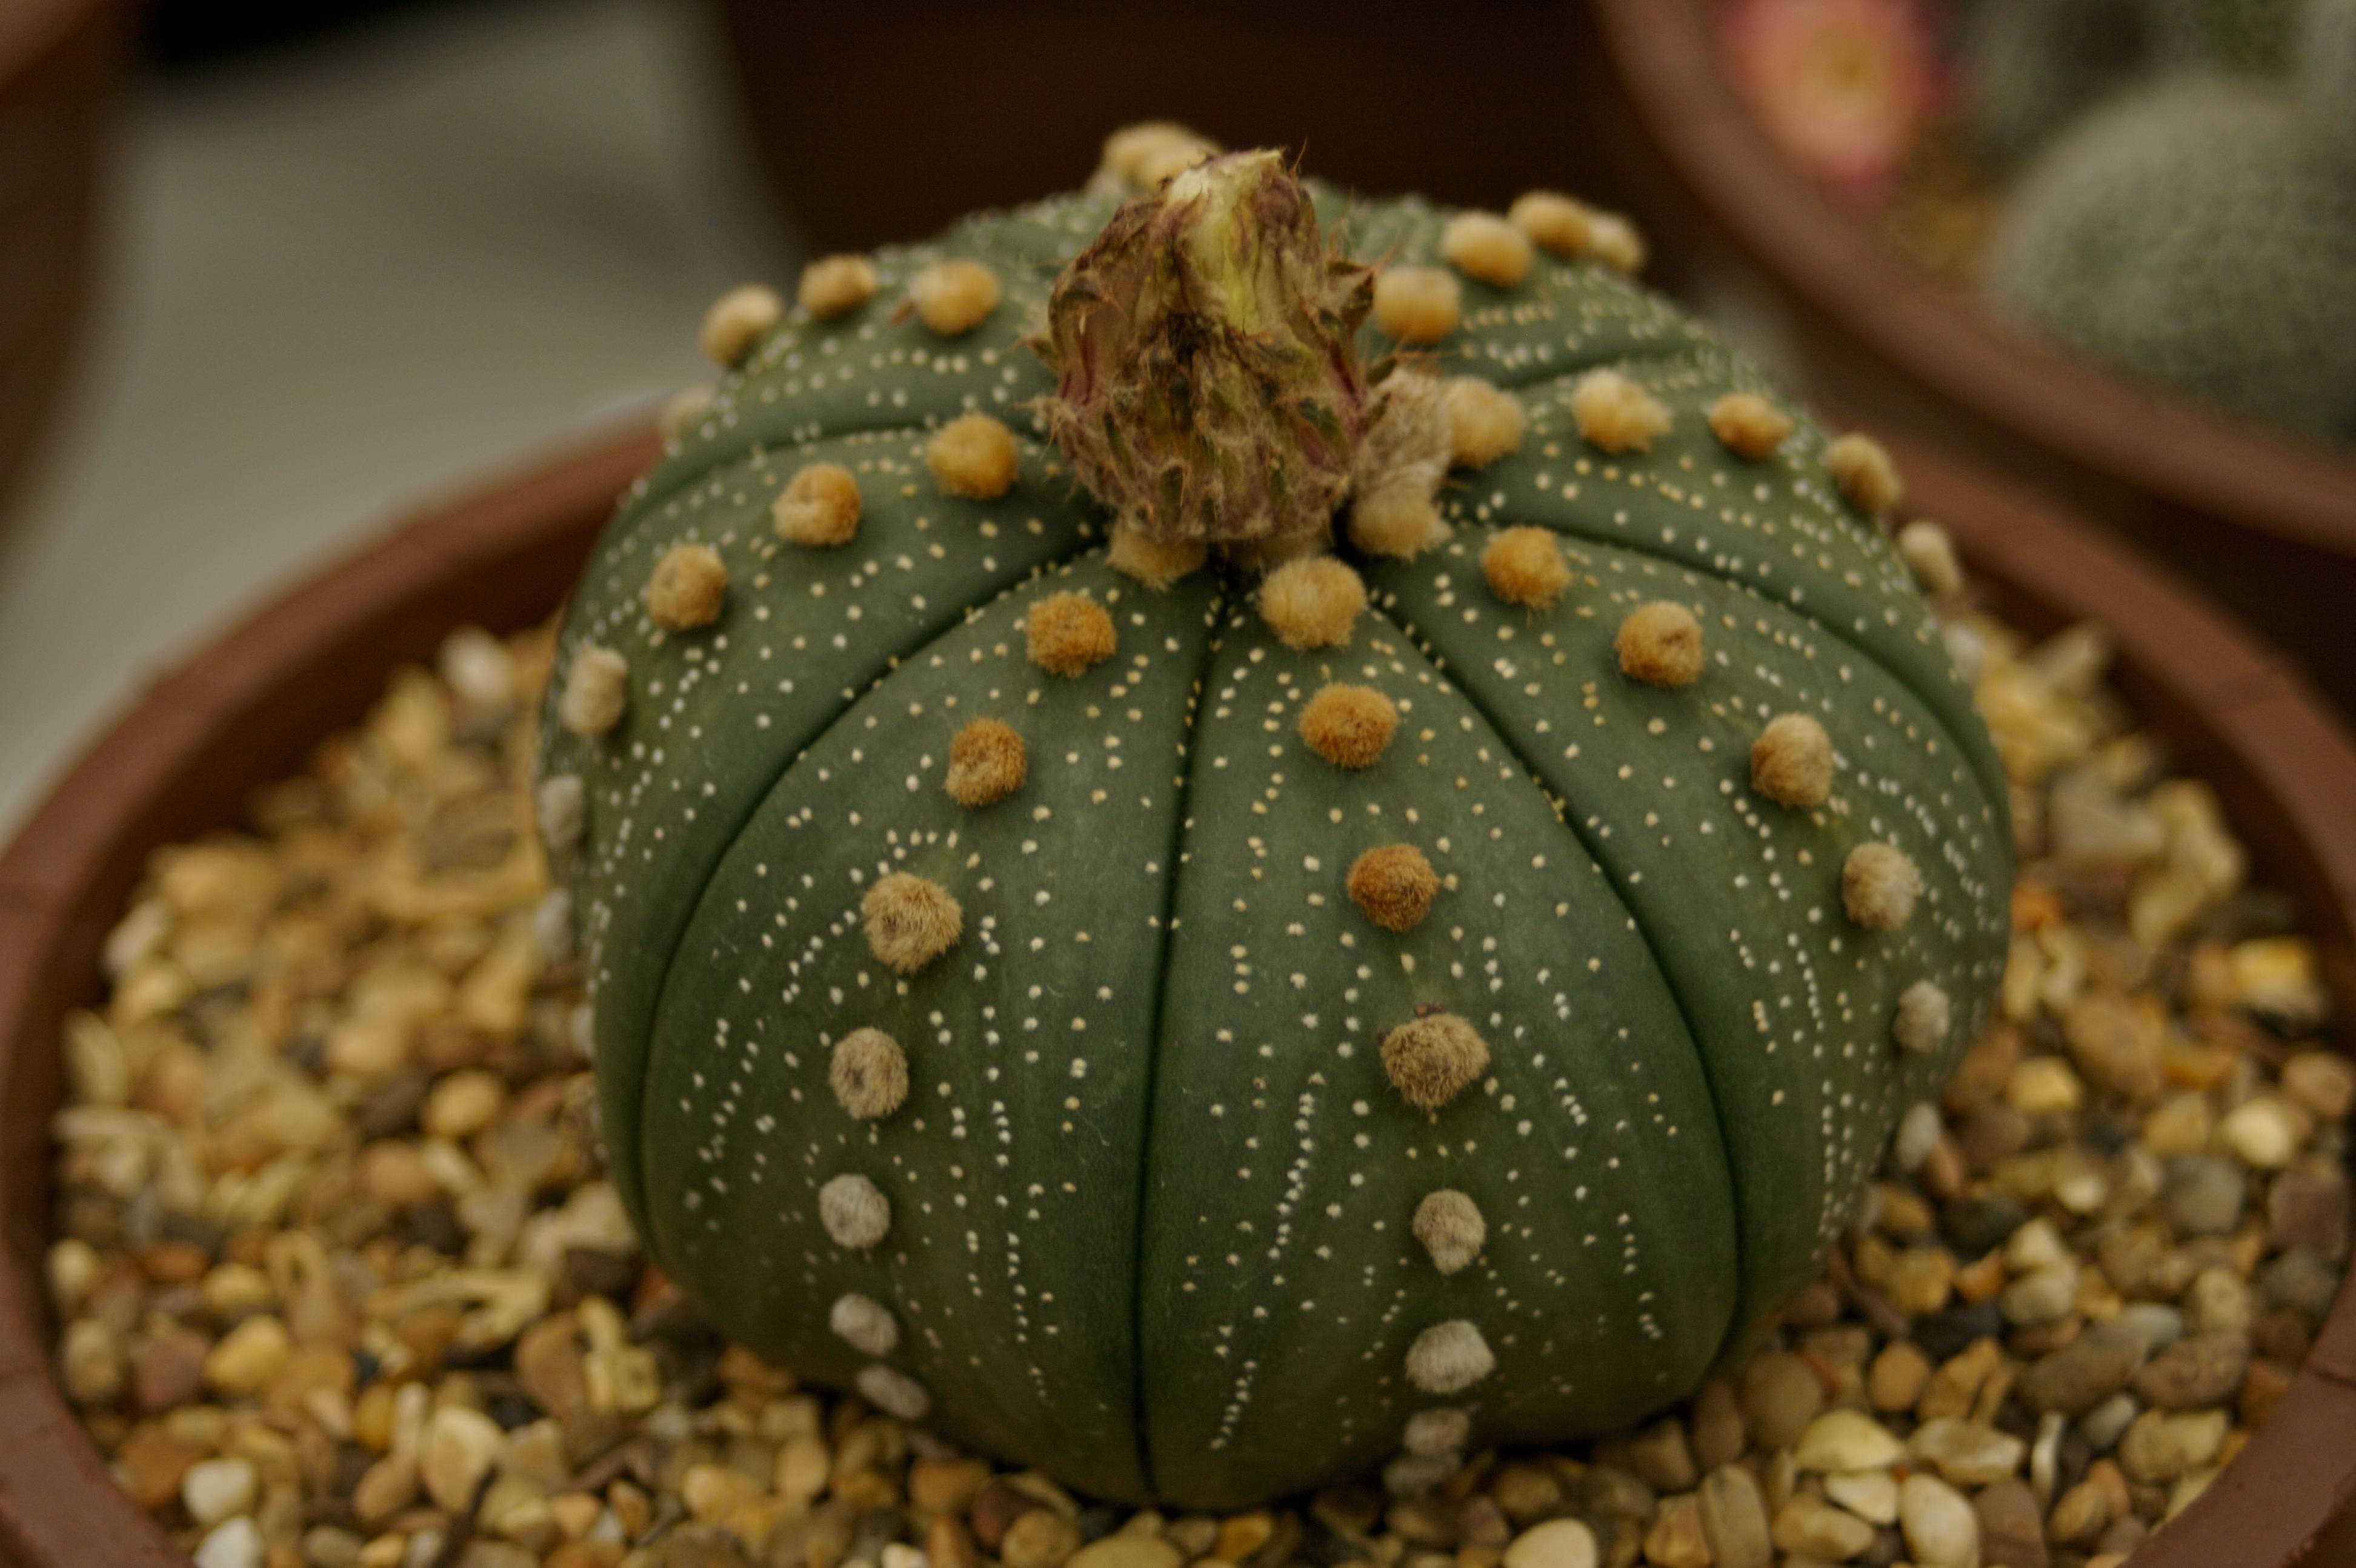 10 самых эффектных комнатных растений из пустыни. кактусы и суккуленты. фото — ботаничка